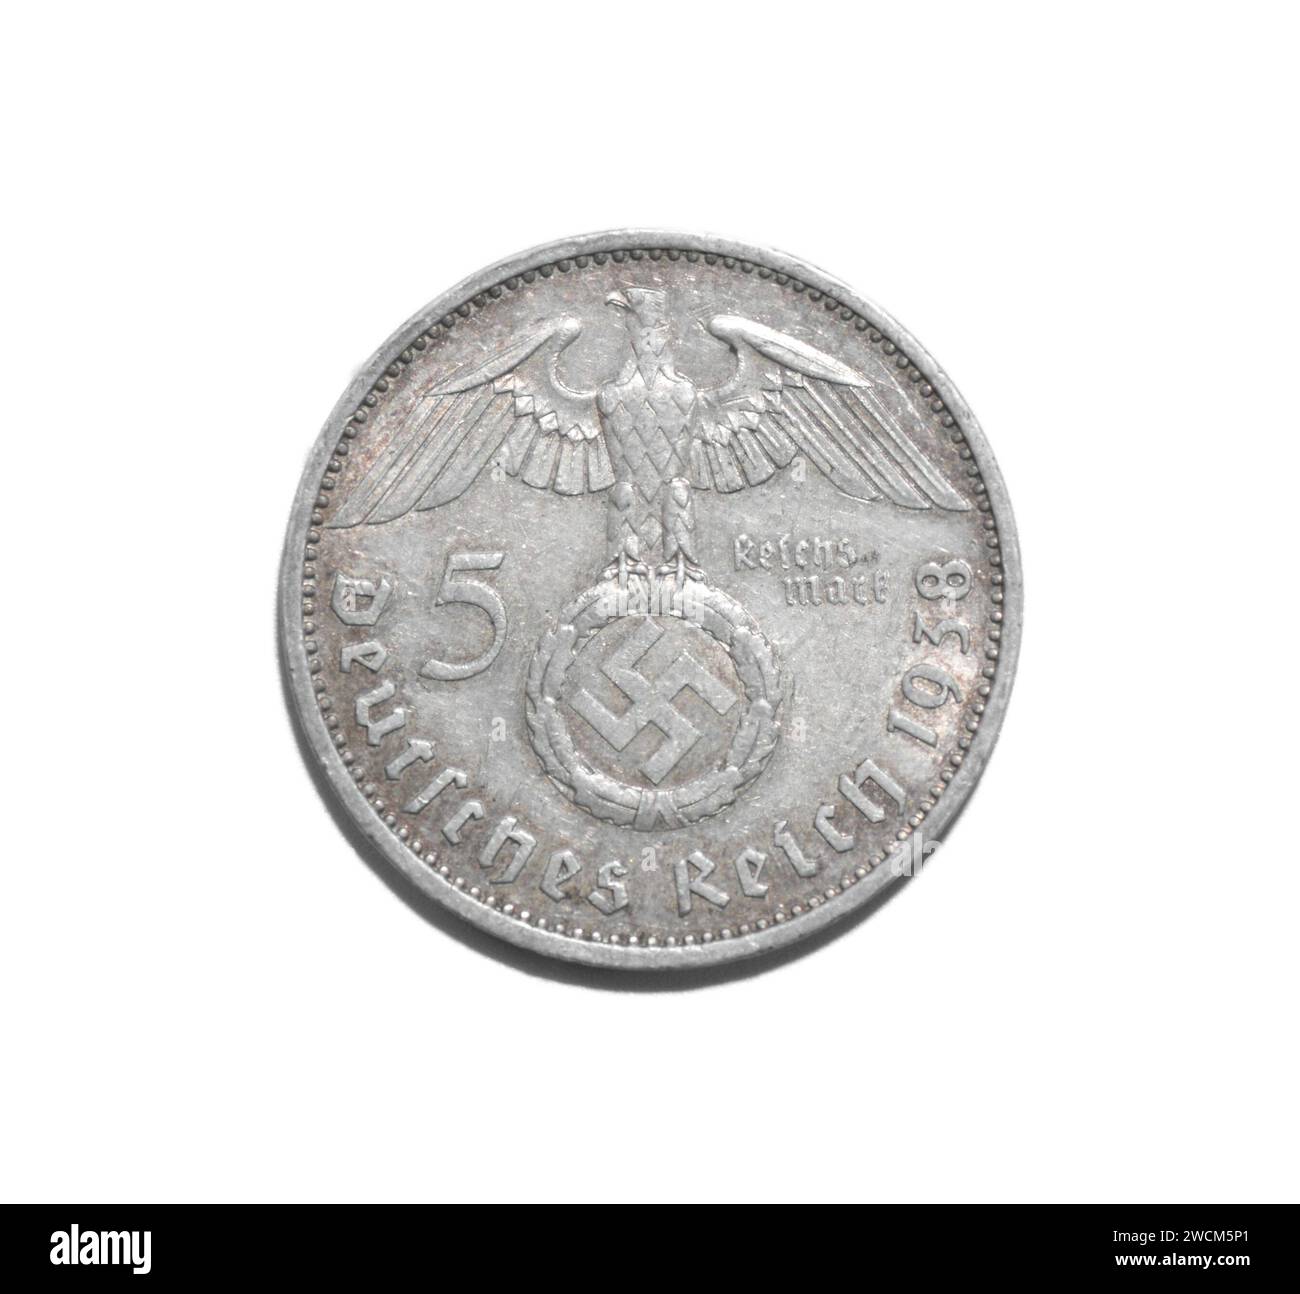 5 Reichsmark 1938 A - Paul von Hindenburg 1847 - 1934 pièce allemande Aigle avec svastika à l'intérieur de la couronne. Deutsches Reich dos side isolé sur WHI Banque D'Images